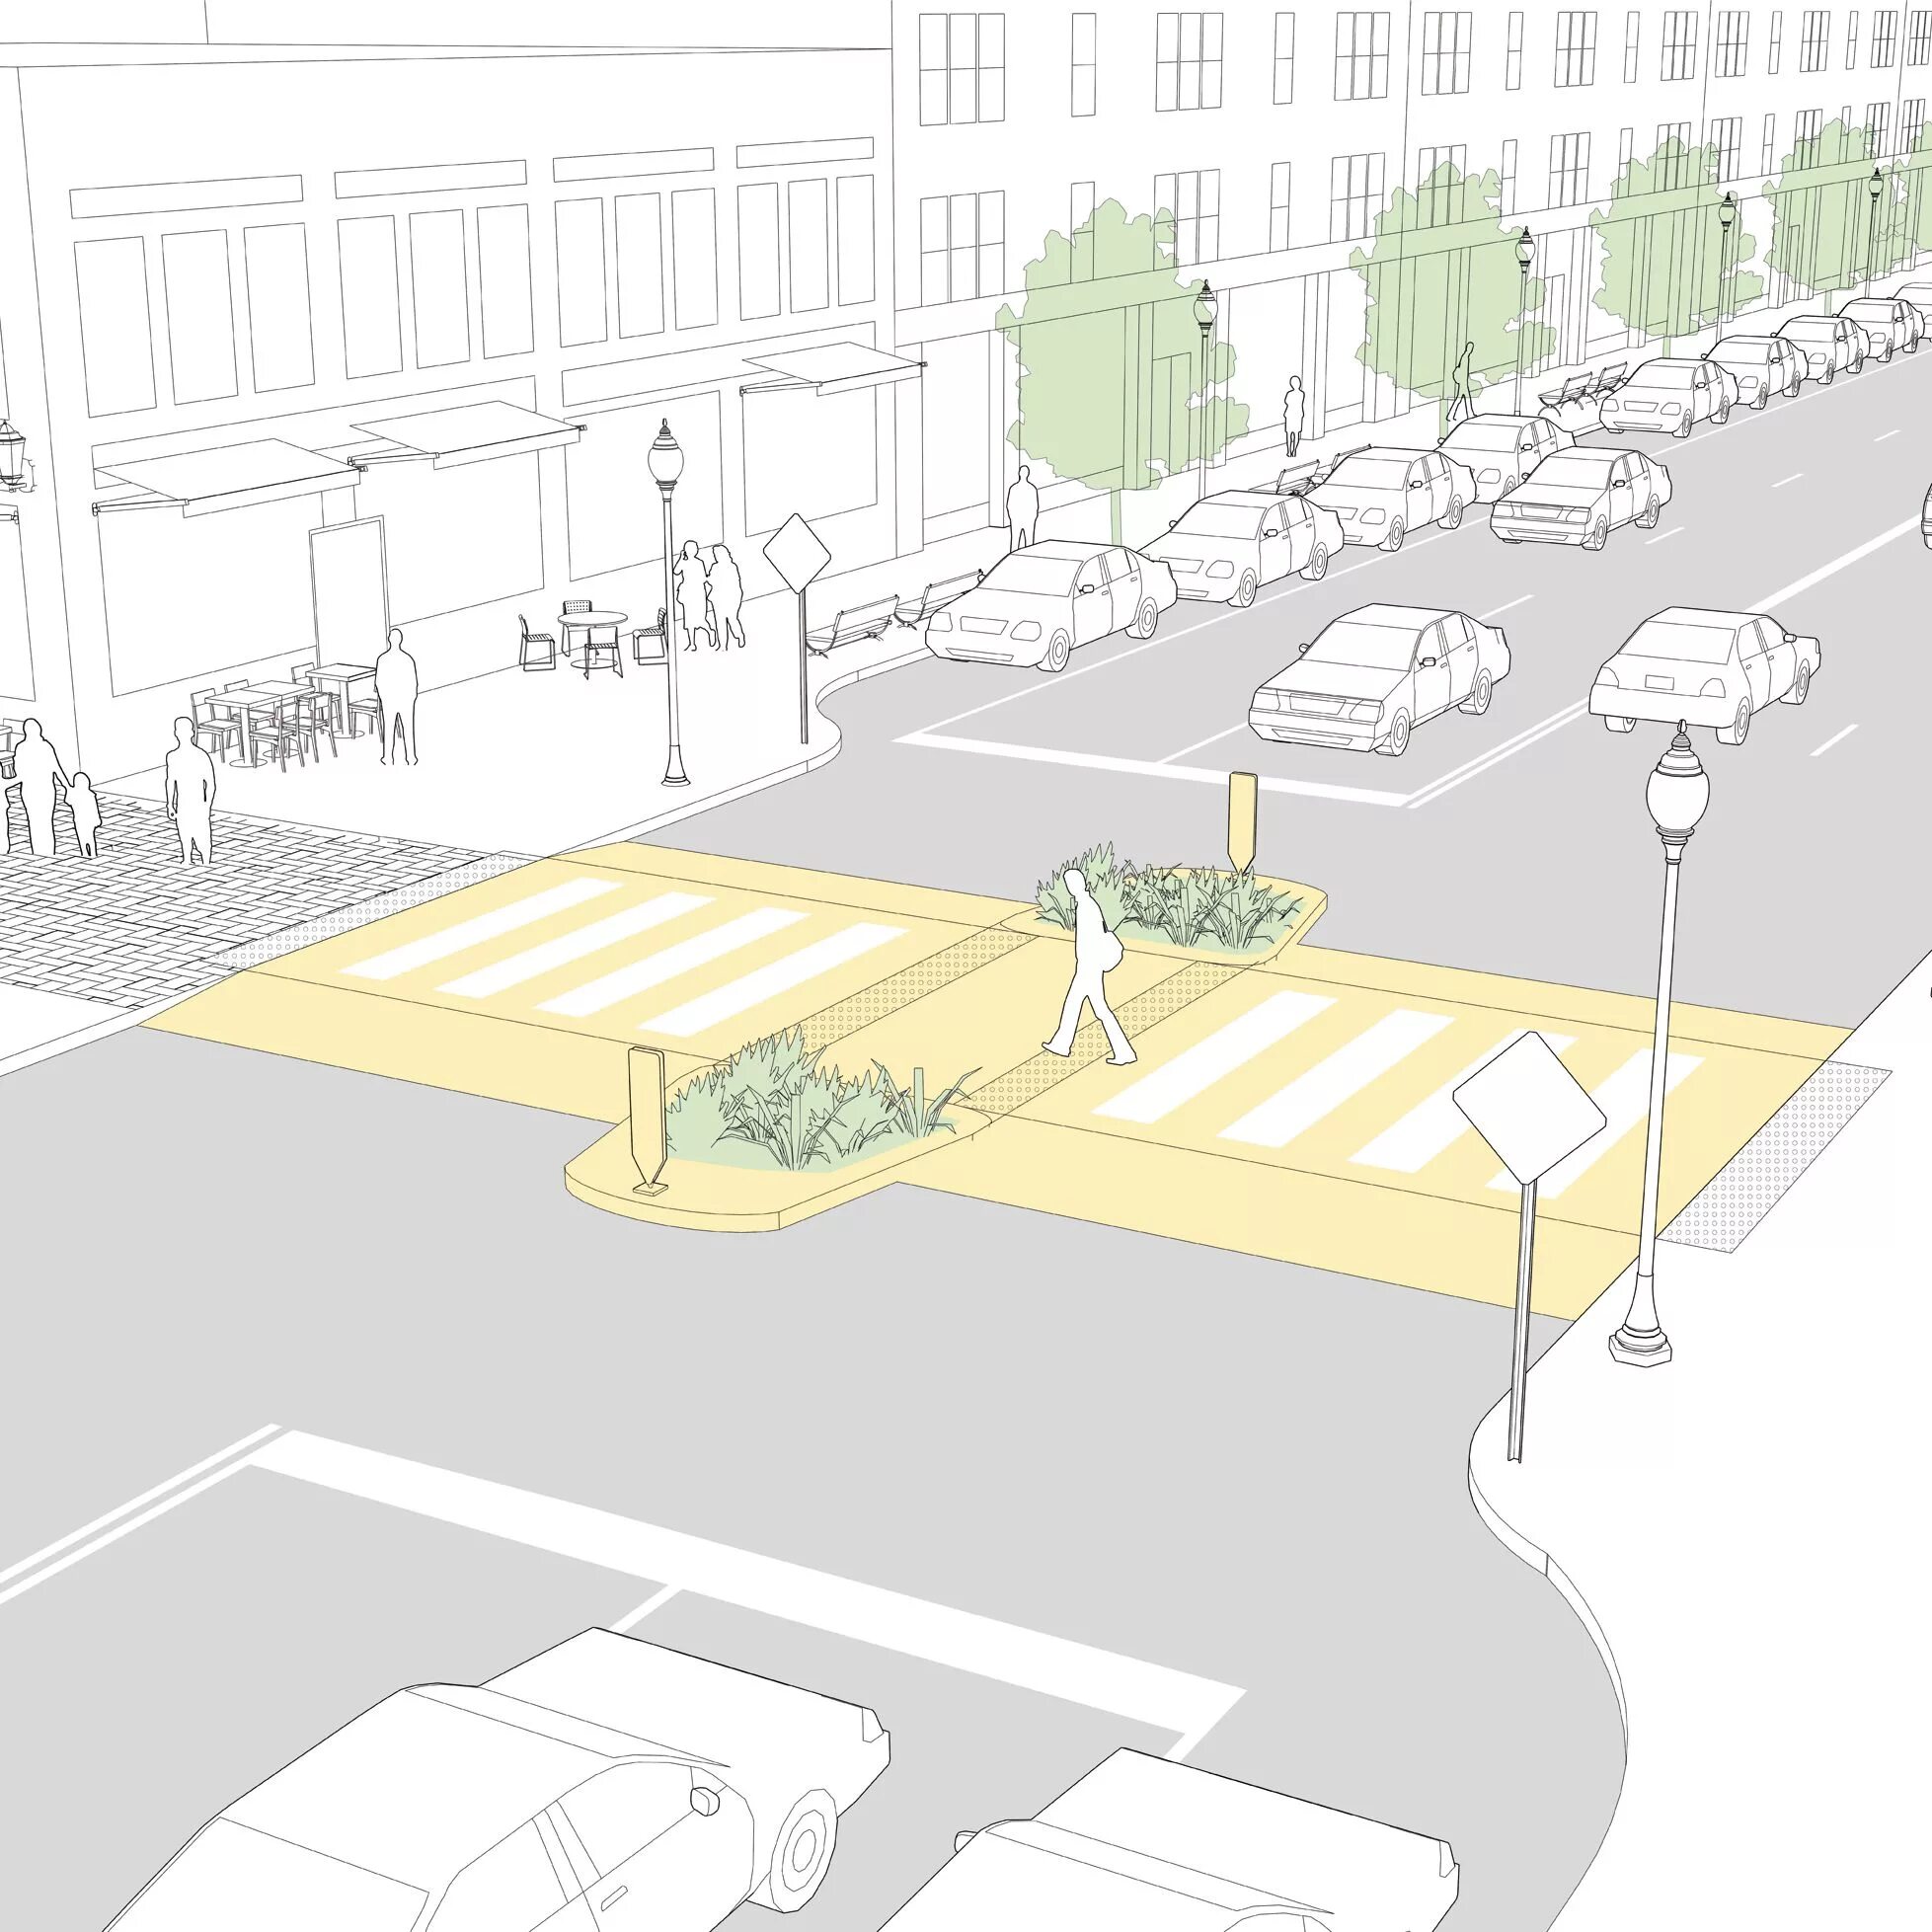 Движение в жилой и пешеходной зонах. Проектирование пешеходных дорожек. Благоустройство проезжей части. Освещение пешеходных дорожек. Проект пешеходного перехода.